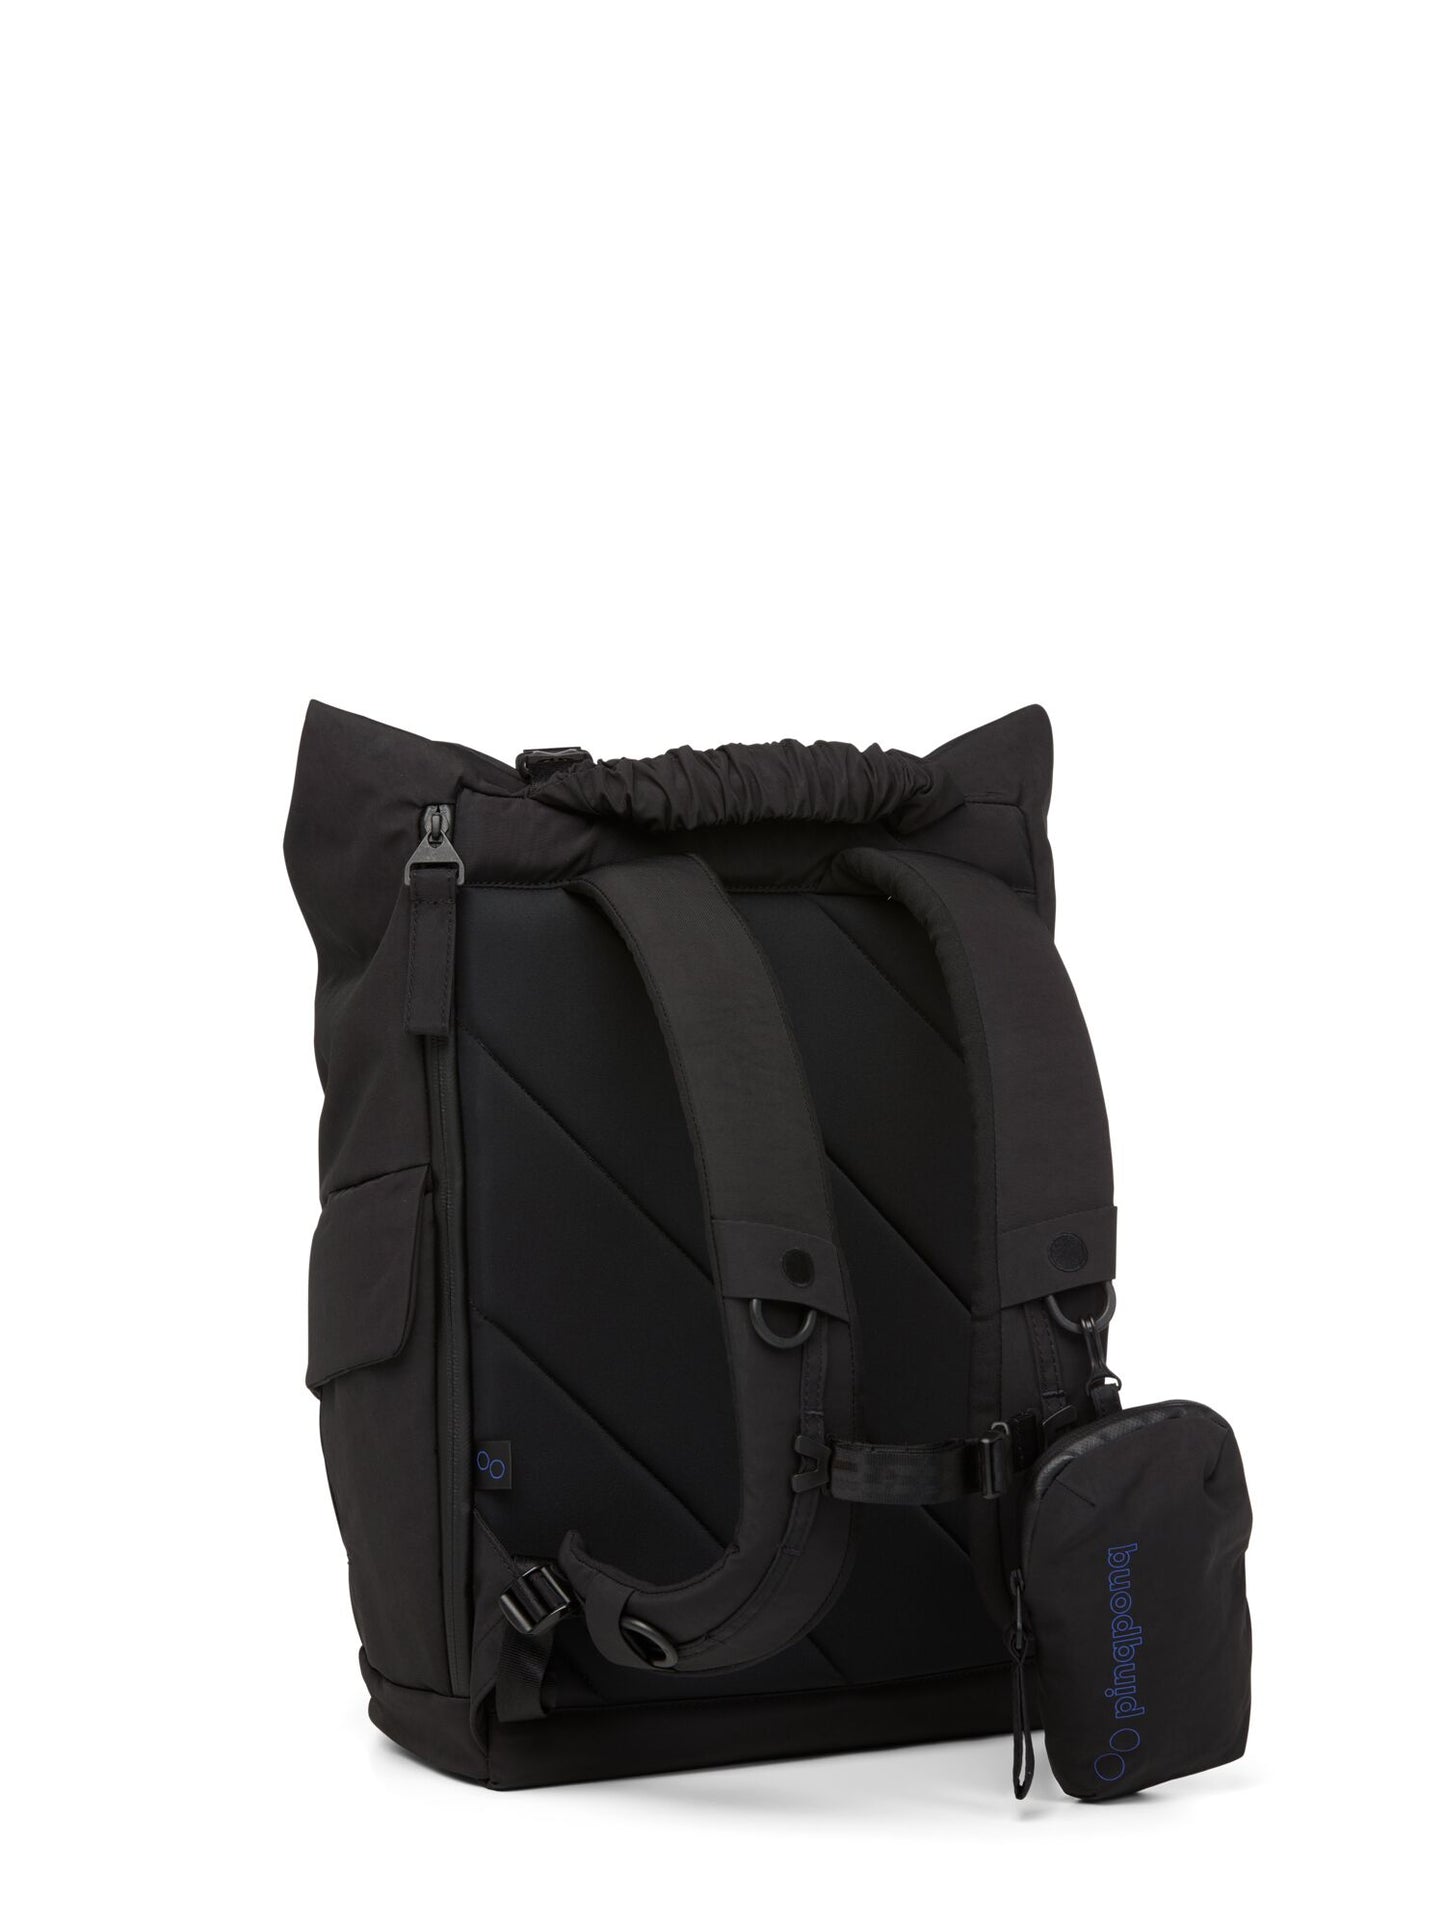 pinqponq-backpack-Kross-Crinkle-Black-back